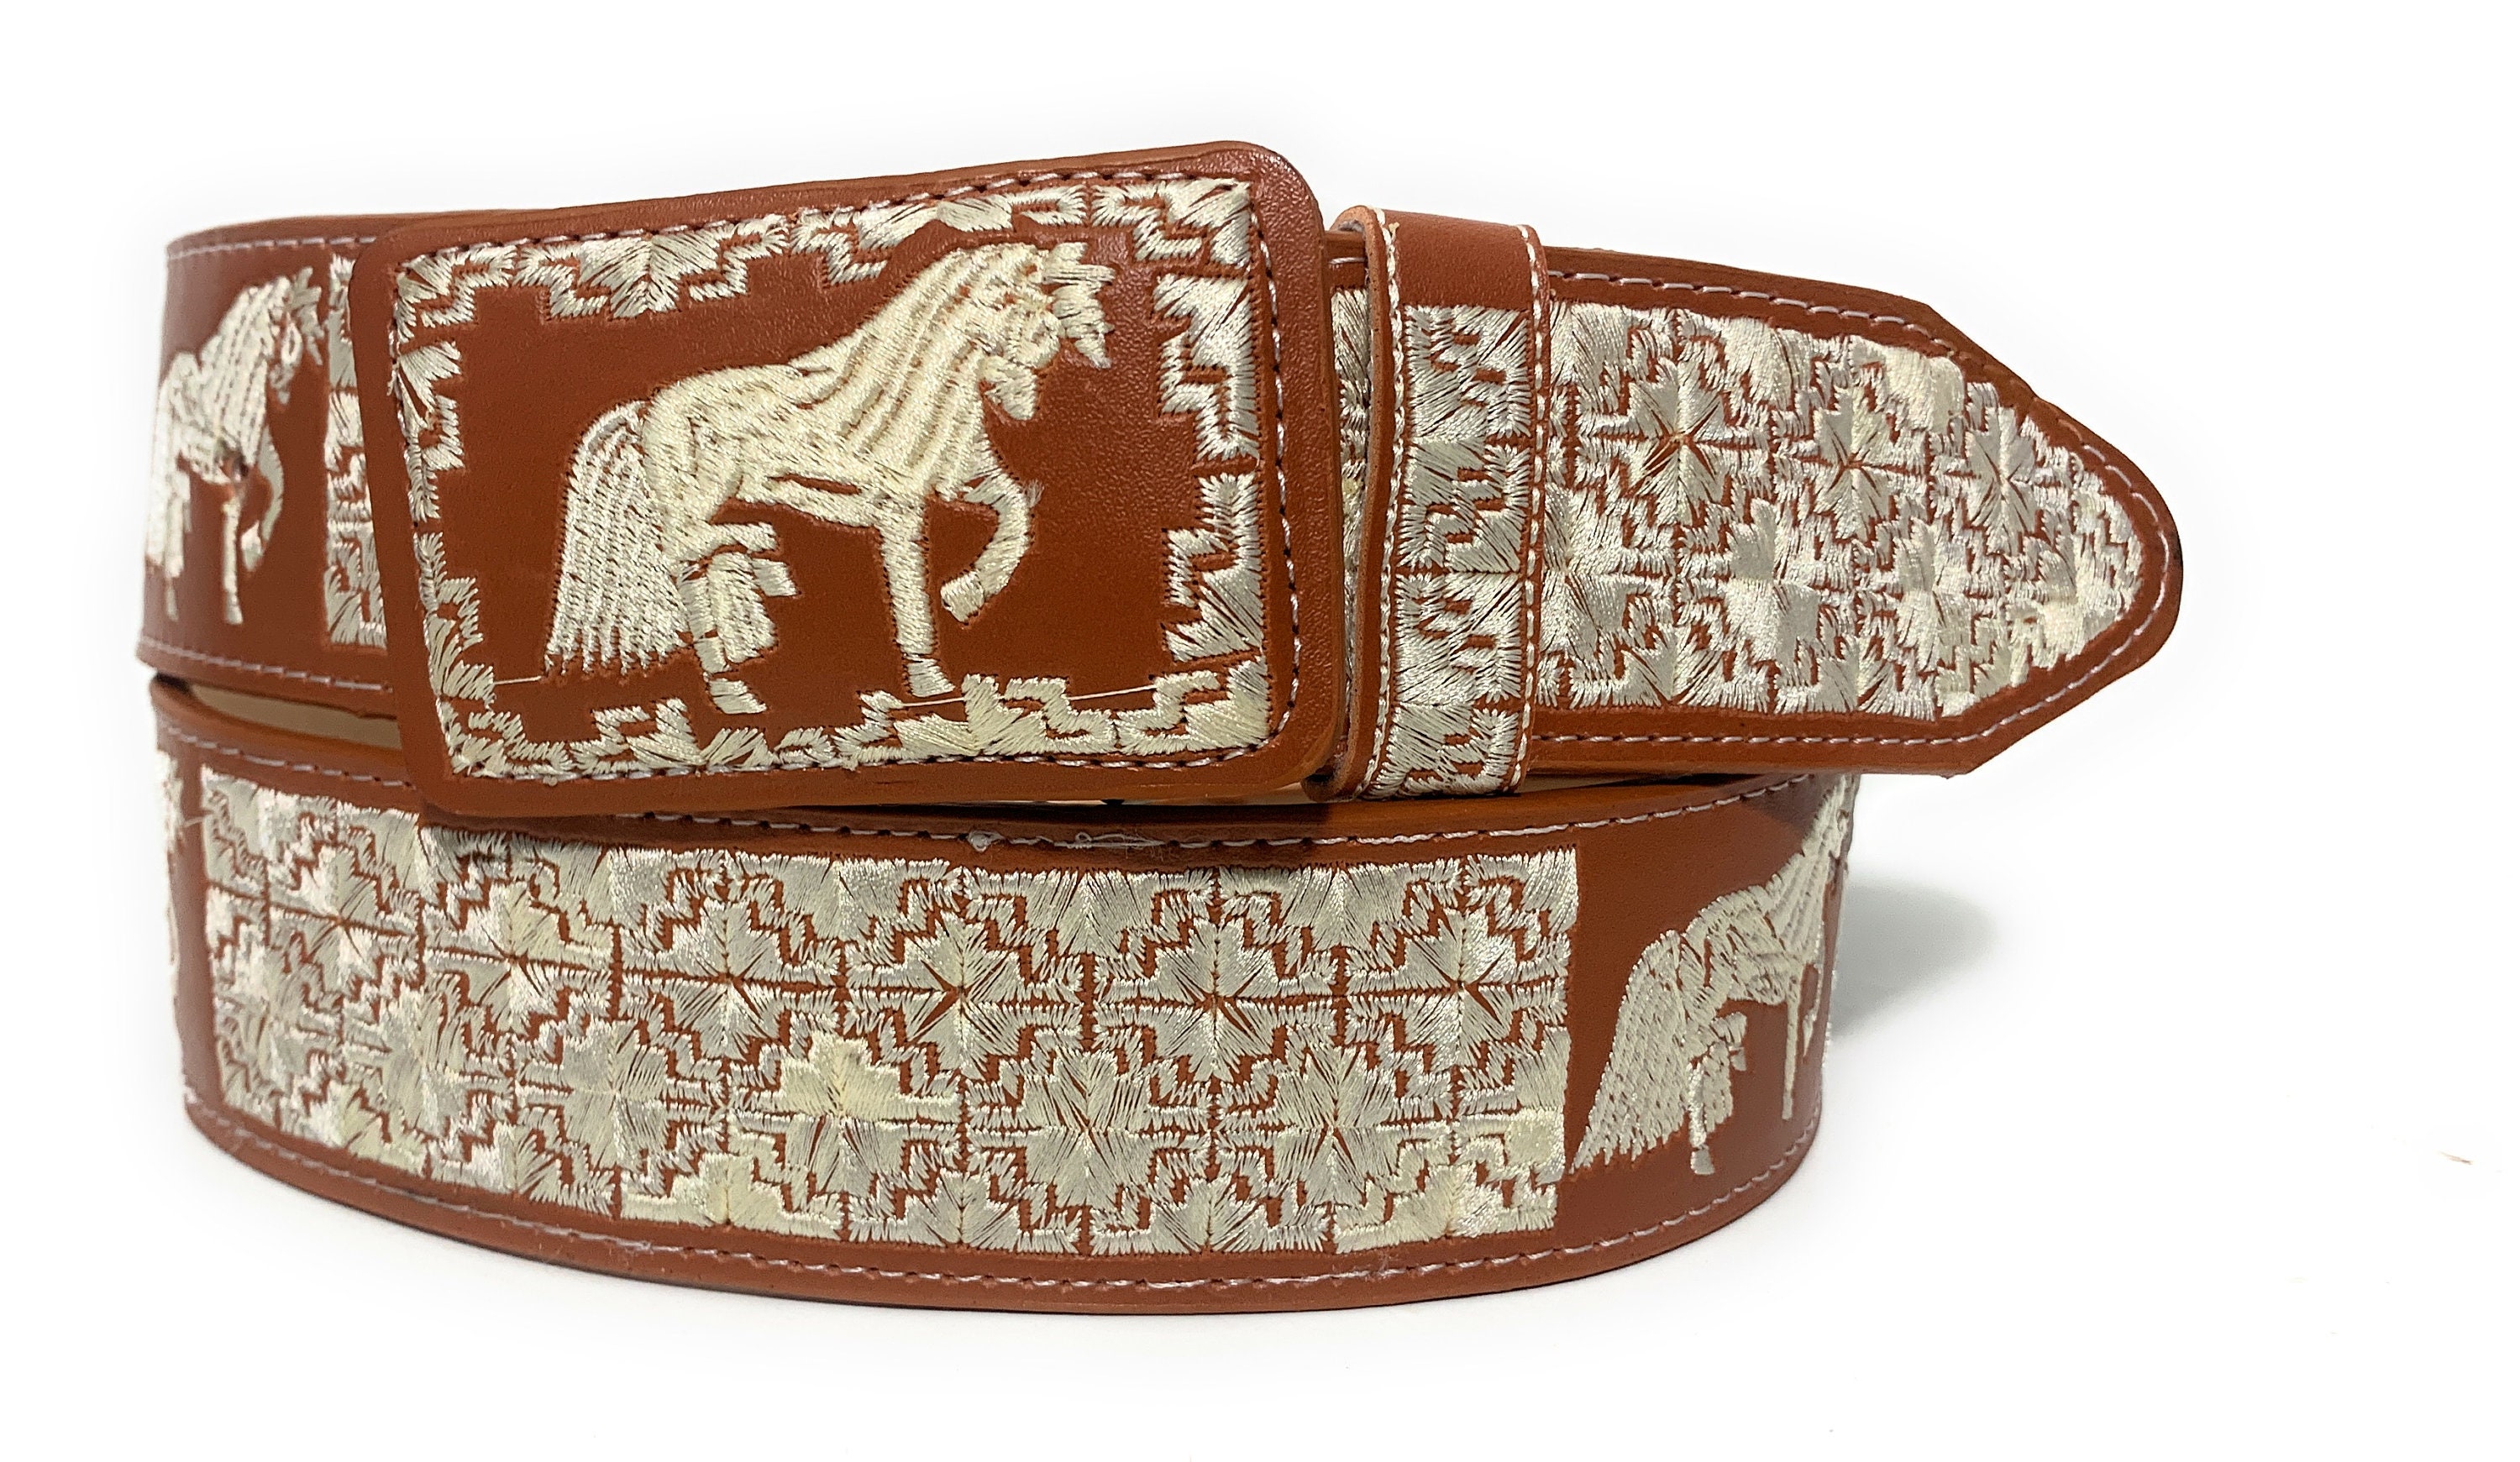 Cinturones El Captan Belt Mens 40 White Leather Embroidered Stallion Western